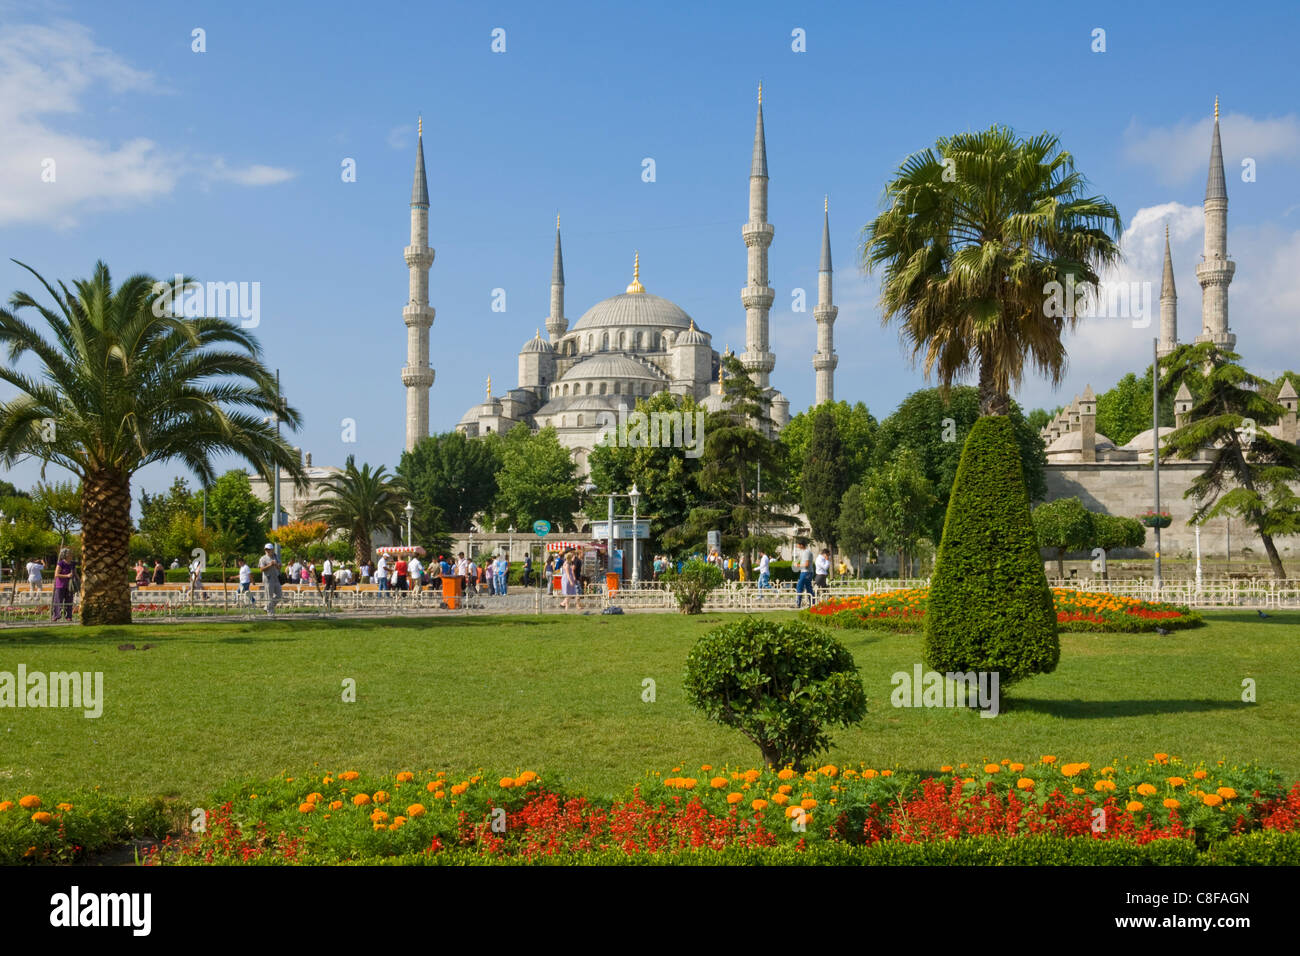 La Mosquée Bleue (Sultan Ahmet Camii) avec six minarets et dômes, Sultanahmet, Istanbul, Turquie Banque D'Images